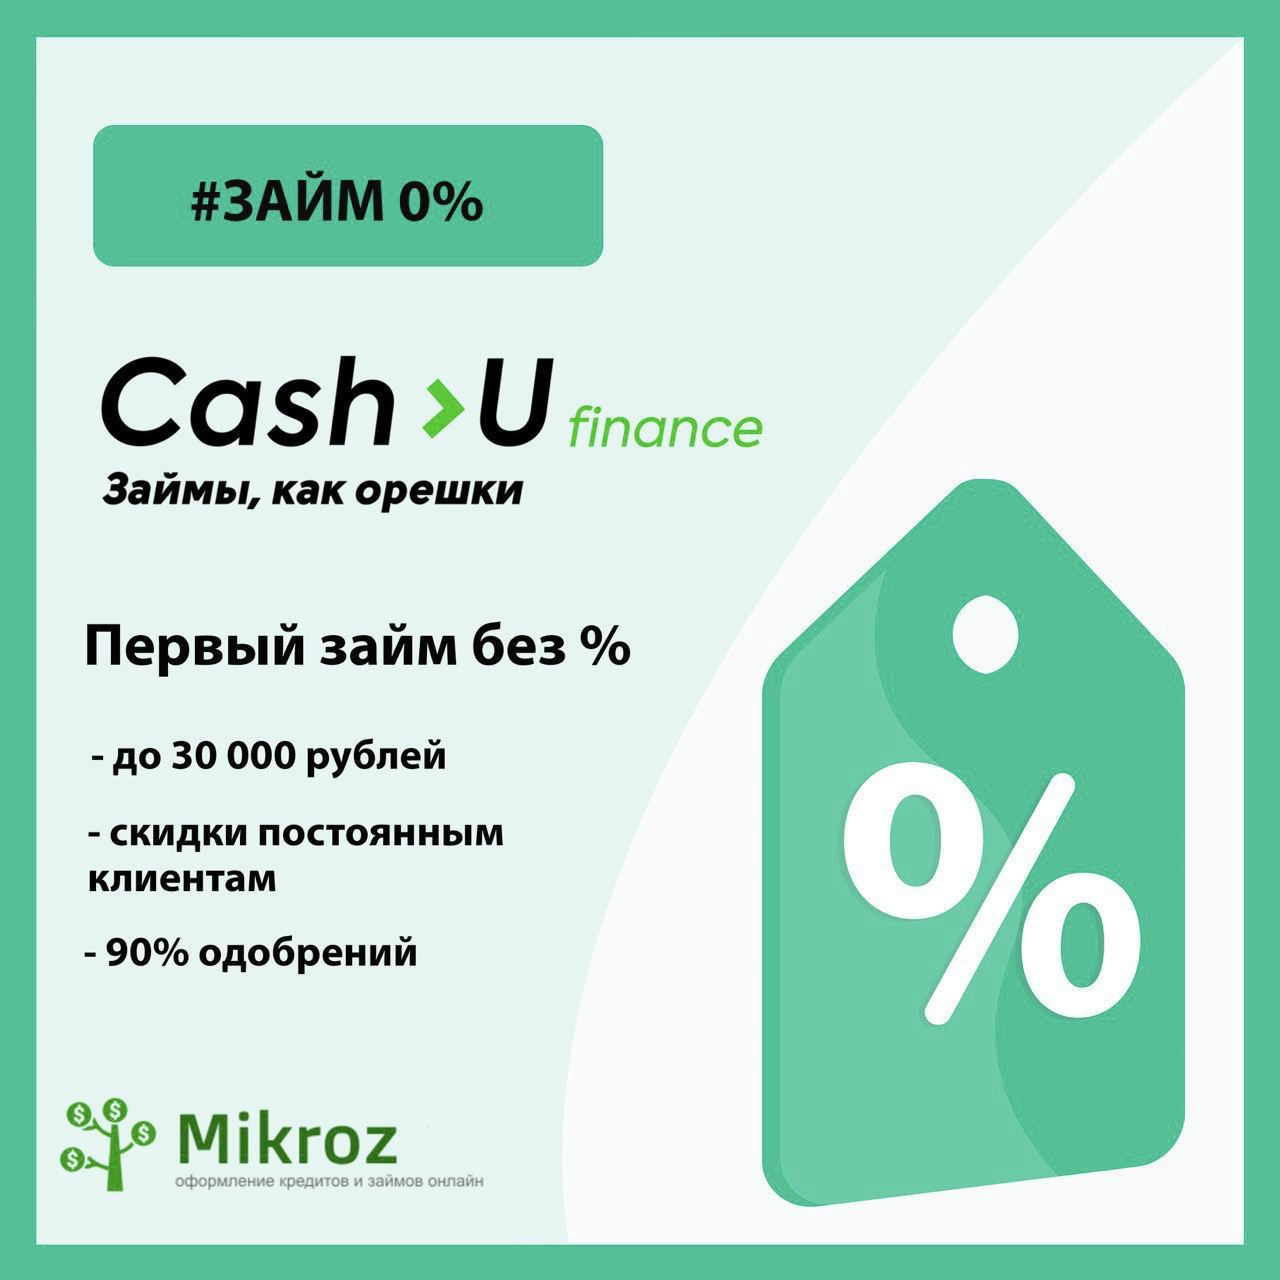 Cash u Finance